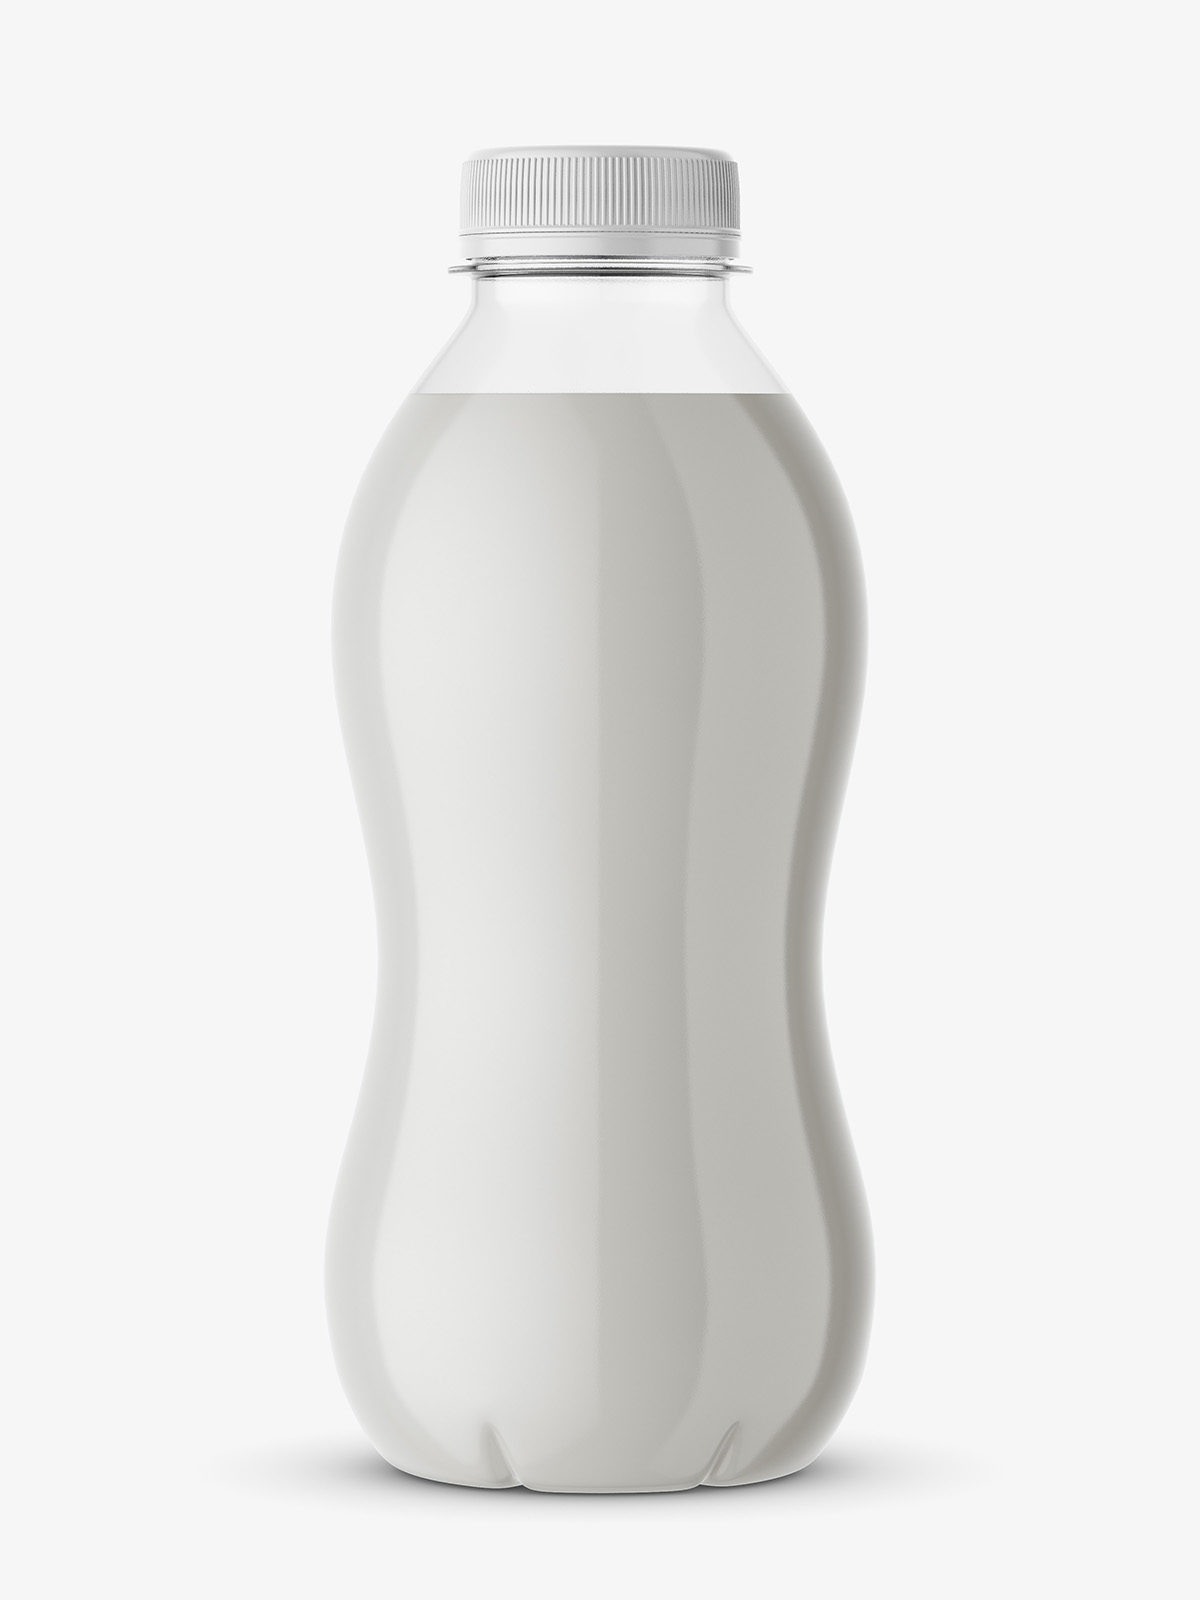 Download Milk Bottle Mockup Smarty Mockups